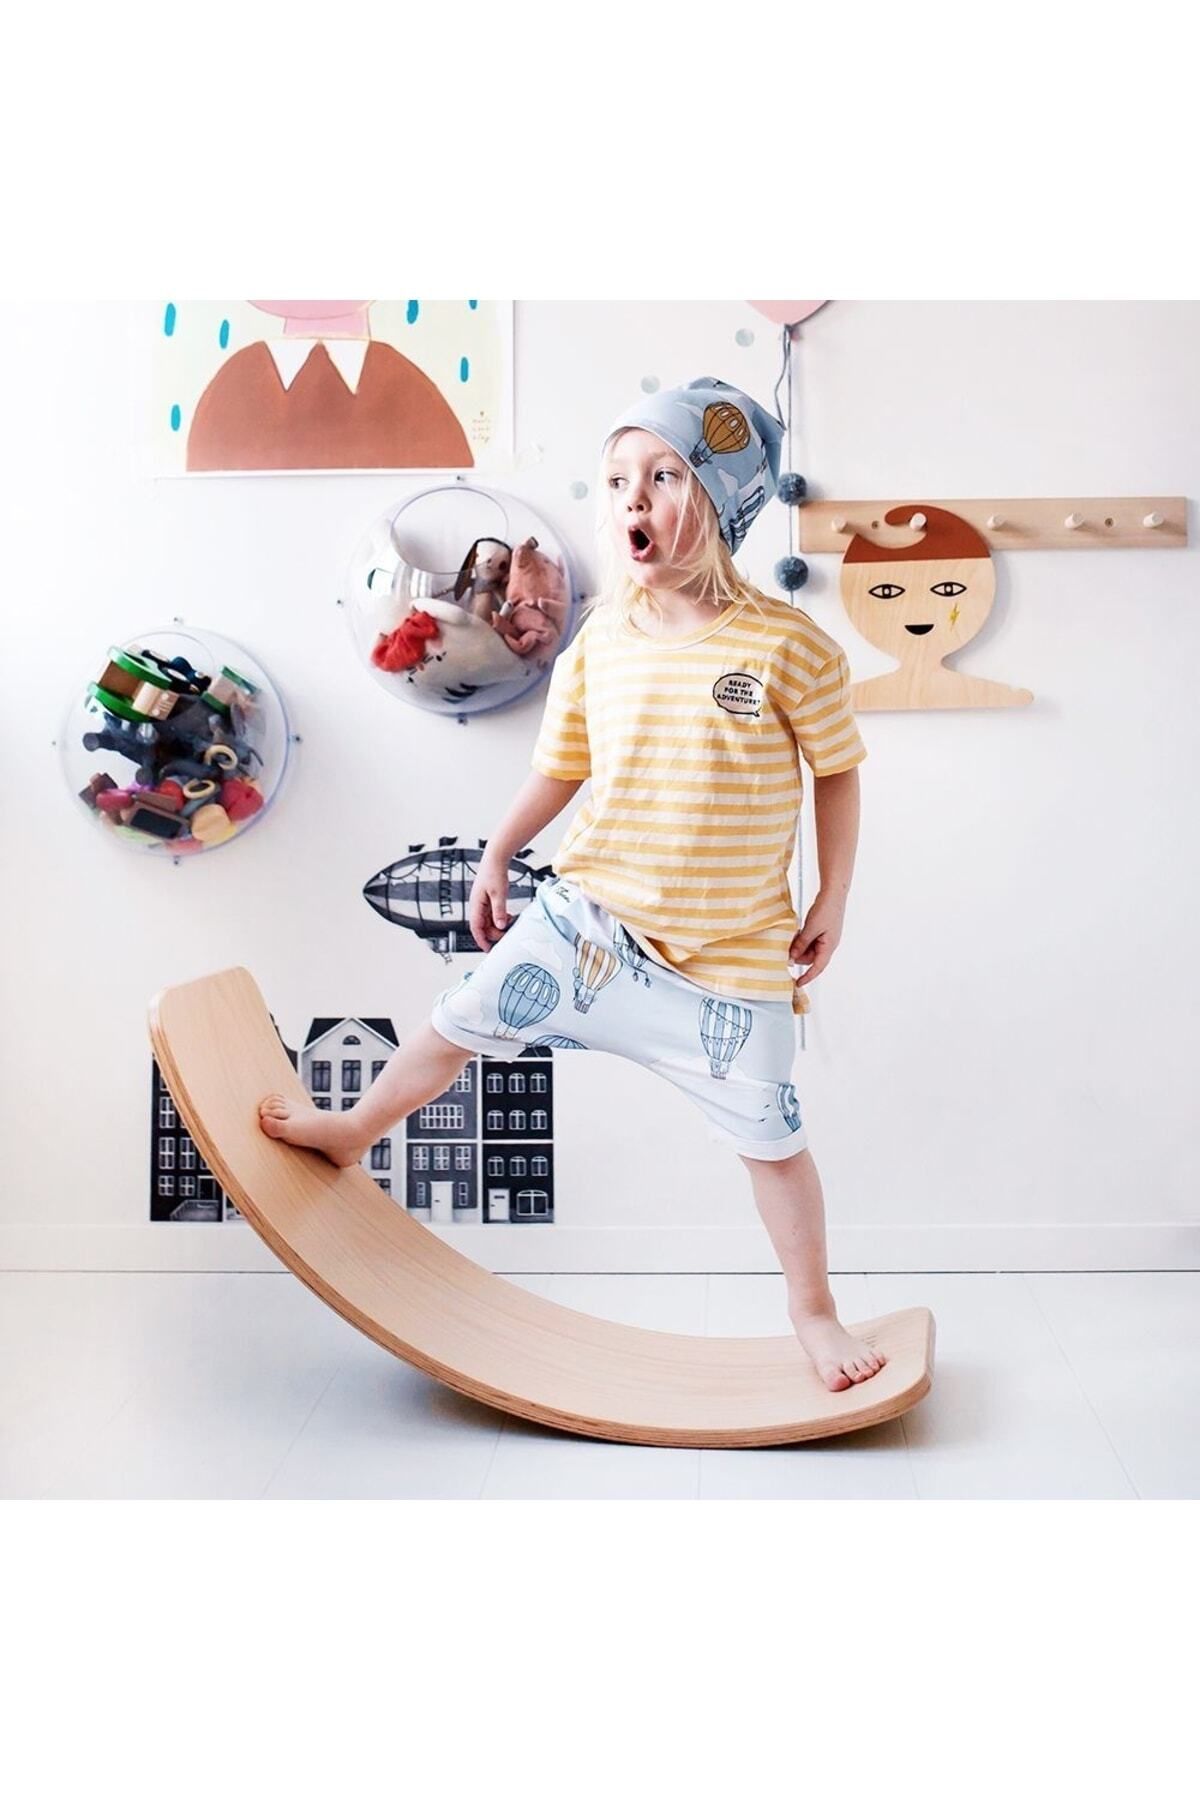 Fagus Wood Denge Tahtası Balance Board Doğal Ahşap Çocuk Oyuncak